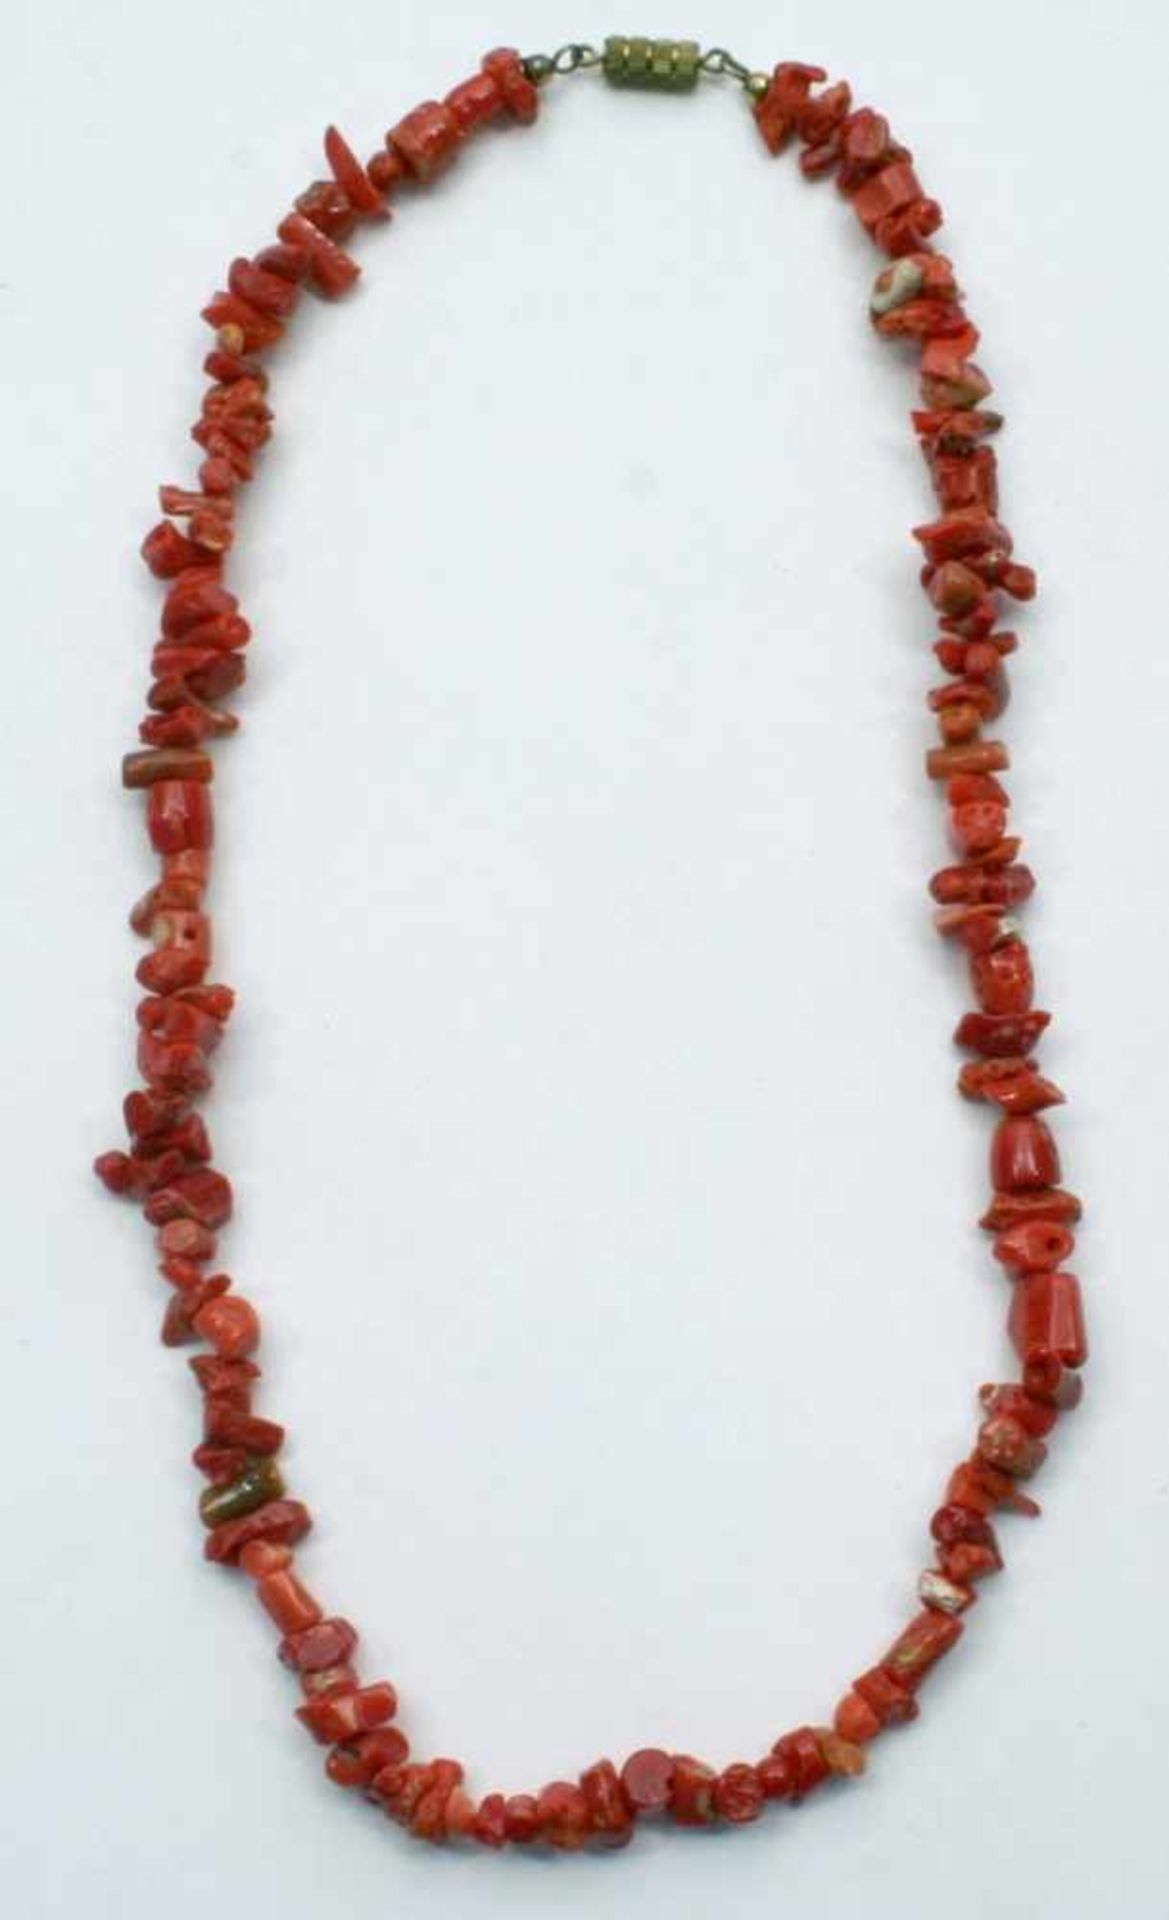 Korallen-Halskette, gefertigt aus unregelmäßig geformten Stücken, Farbe: dunkelrot,Drehverschluß,